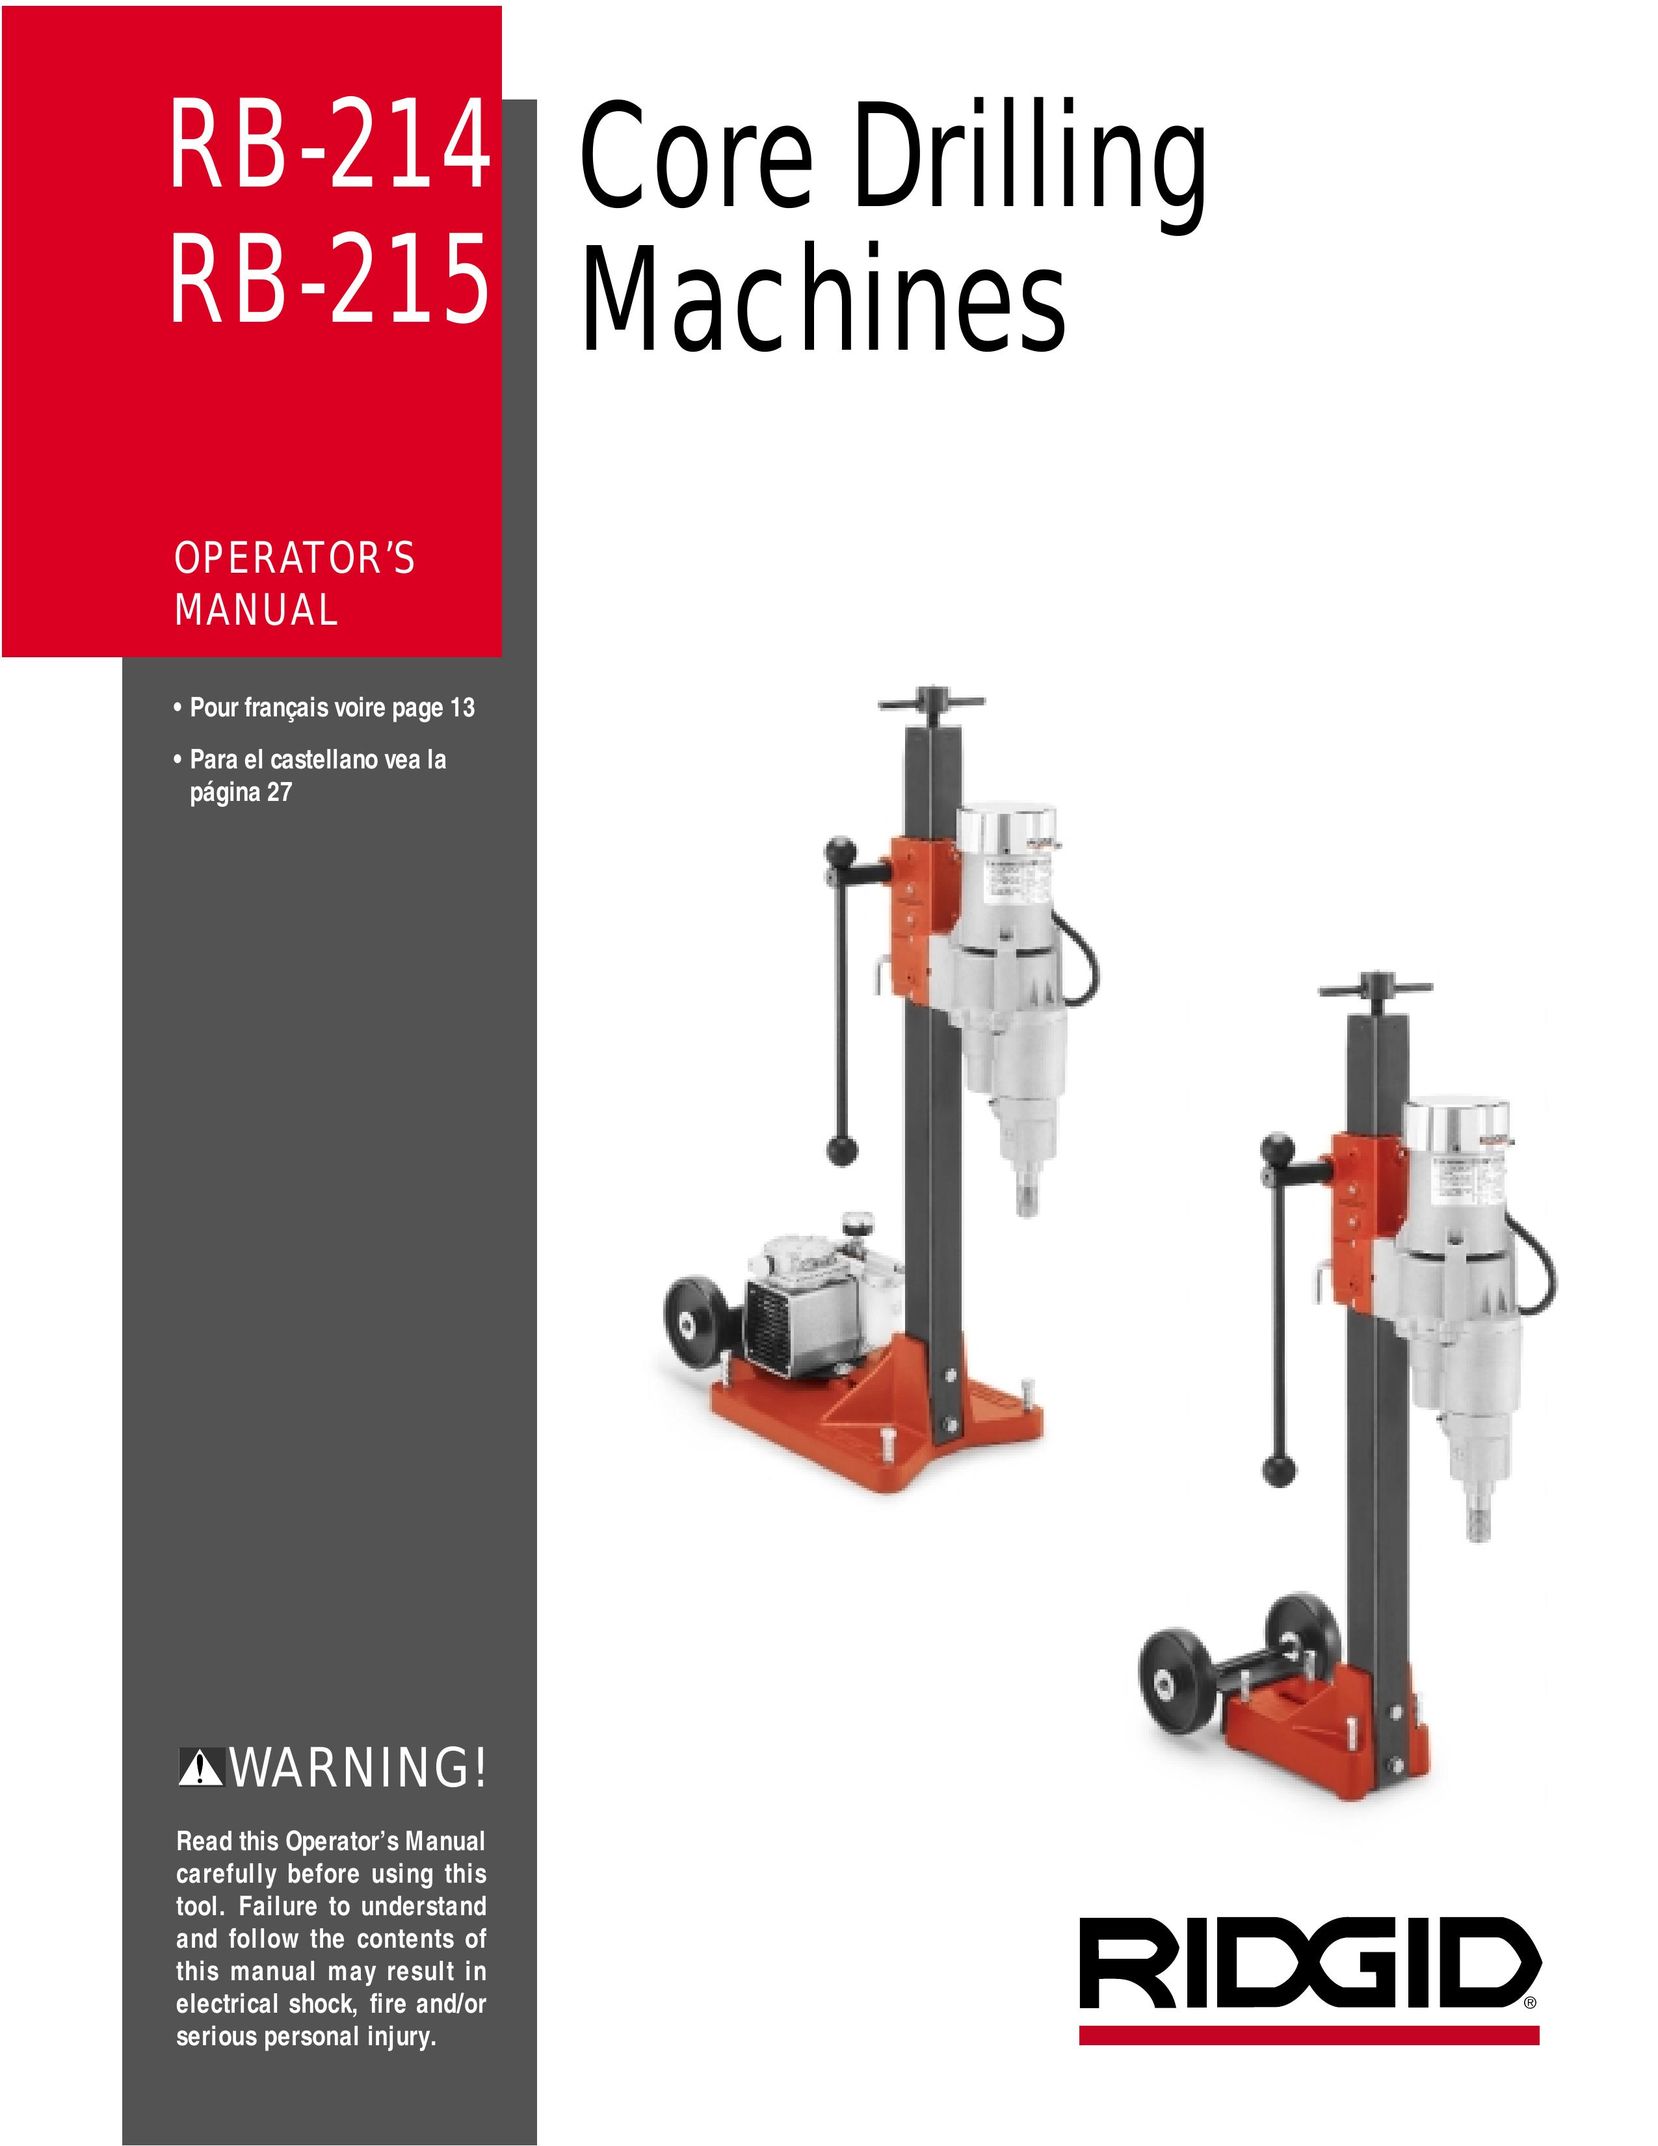 RIDGID RB-214 Drill User Manual